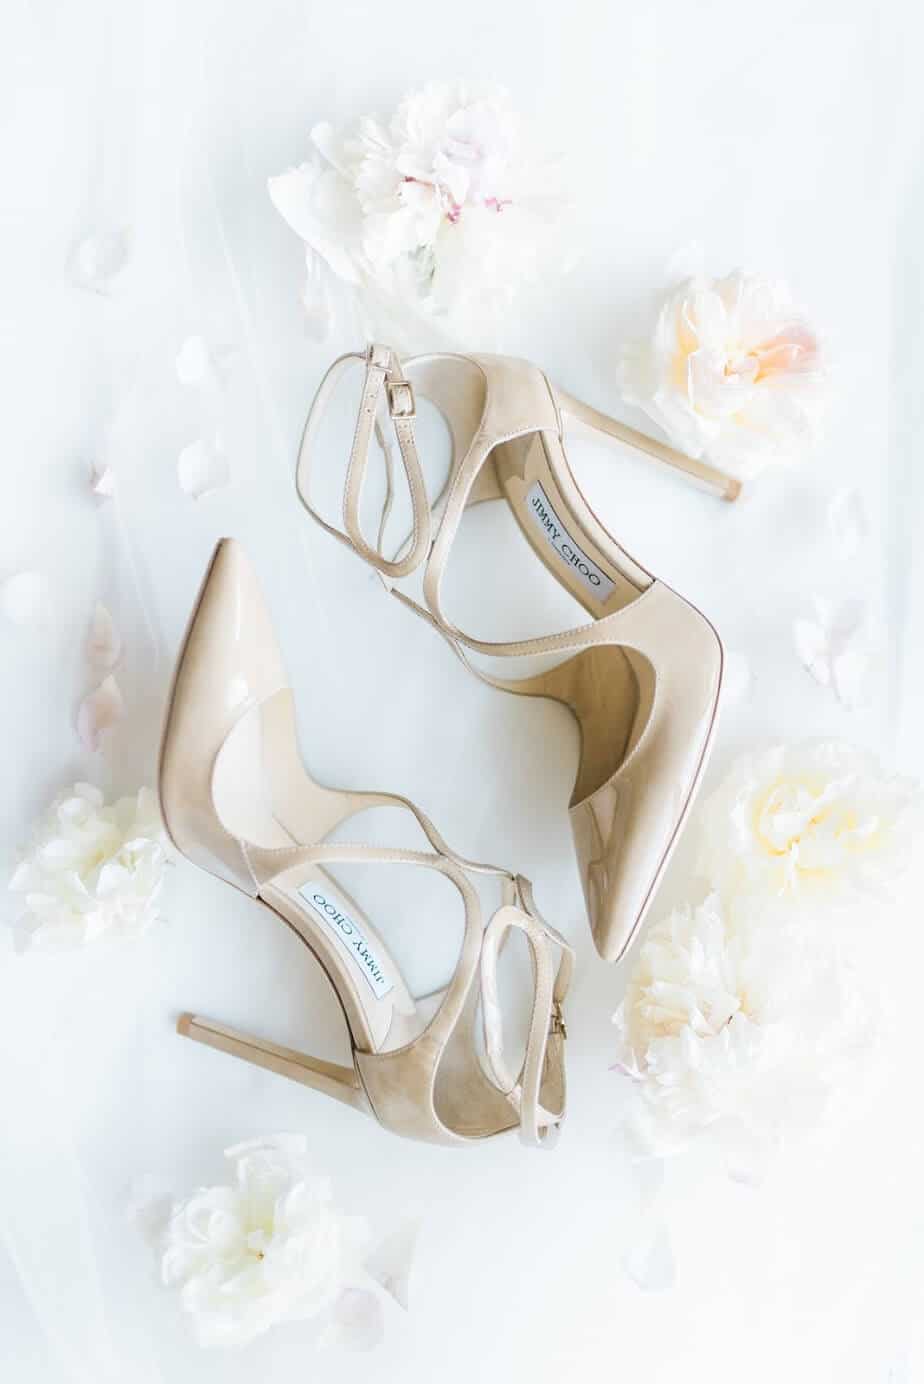 wearing on catholic wedding ivory shoes